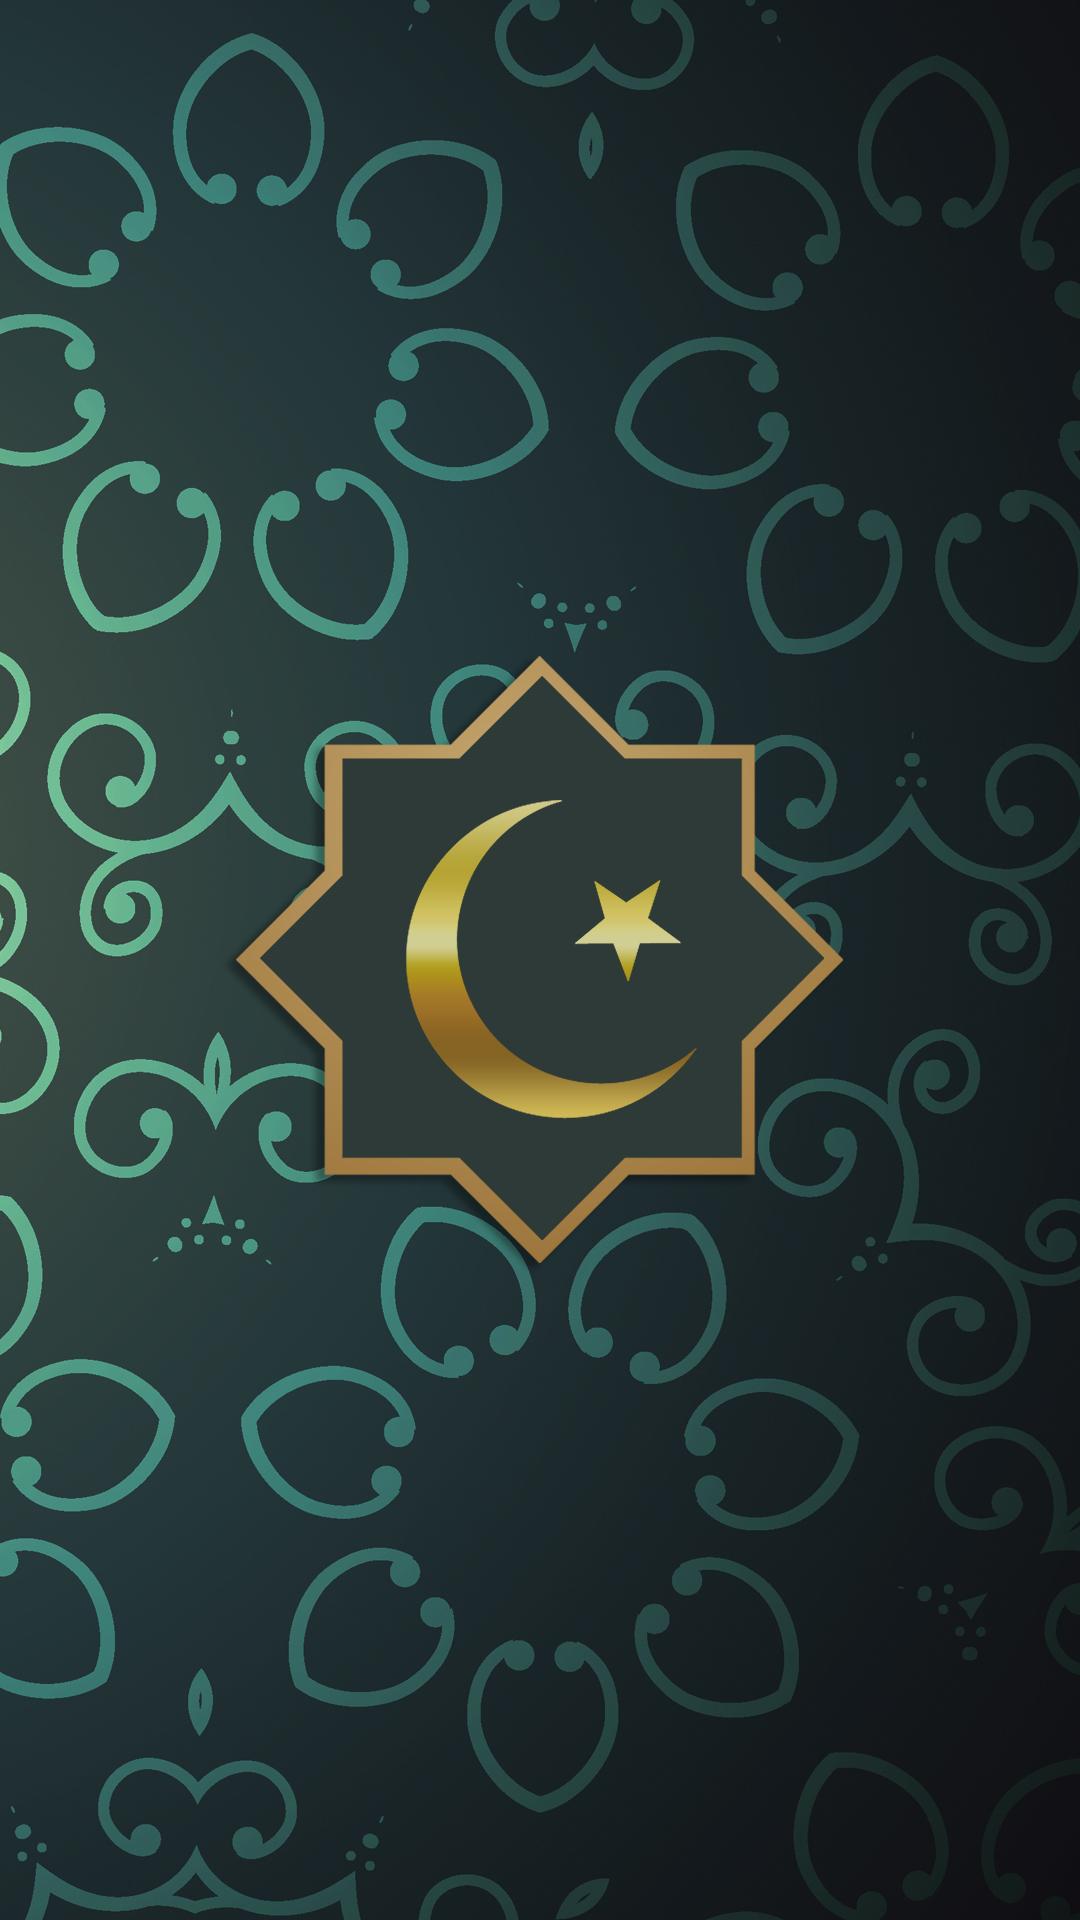 Islamic Full Hd Wallpaper For Mobile